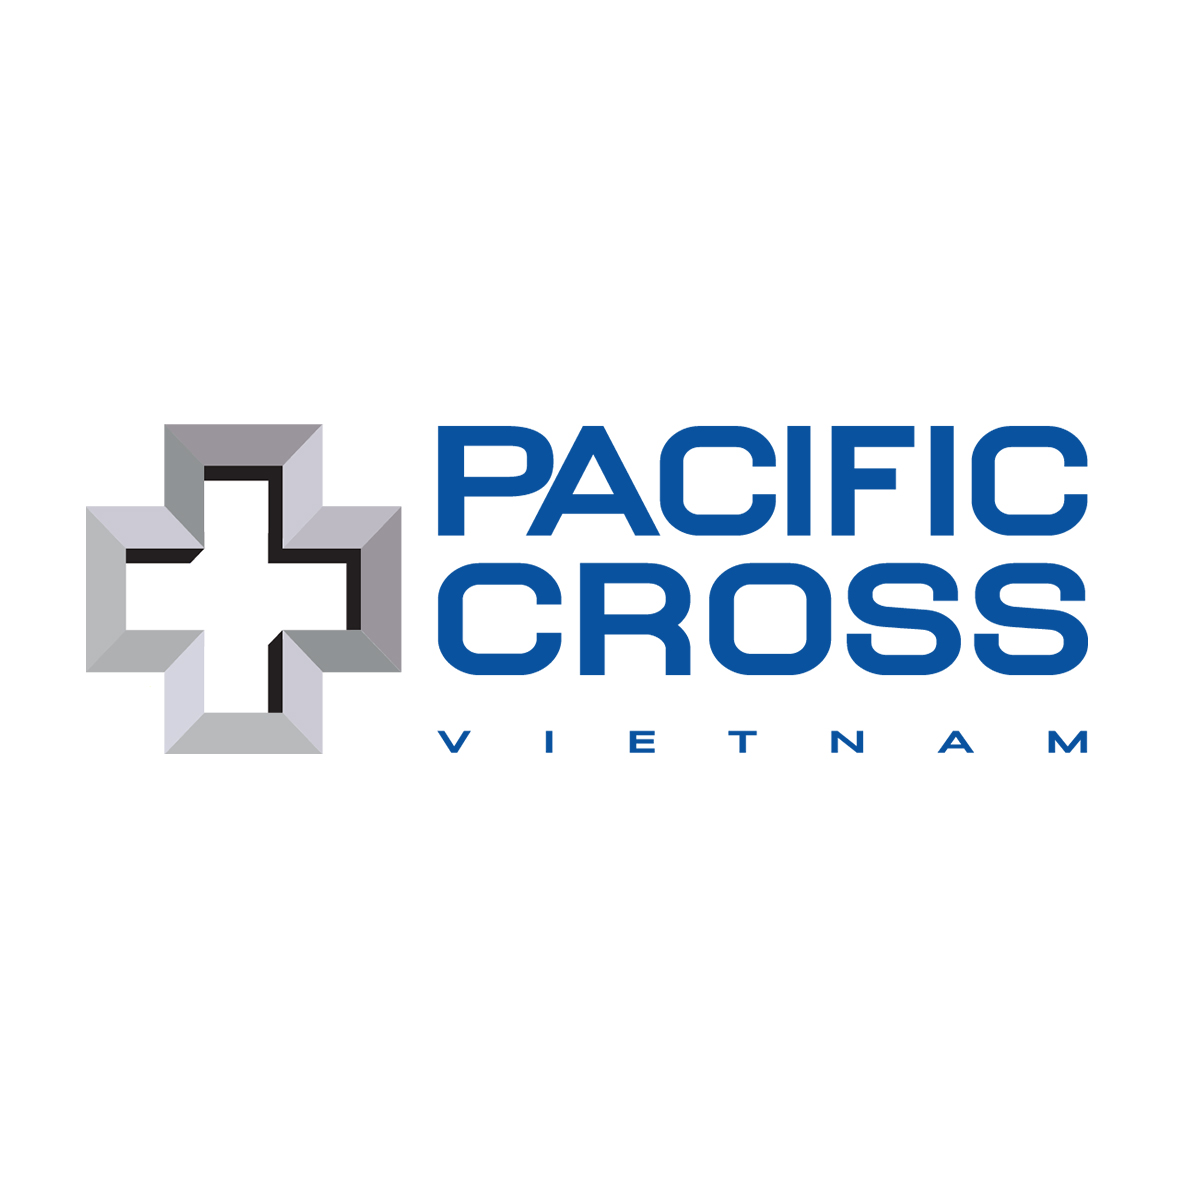 Bao hiem Pacific cross